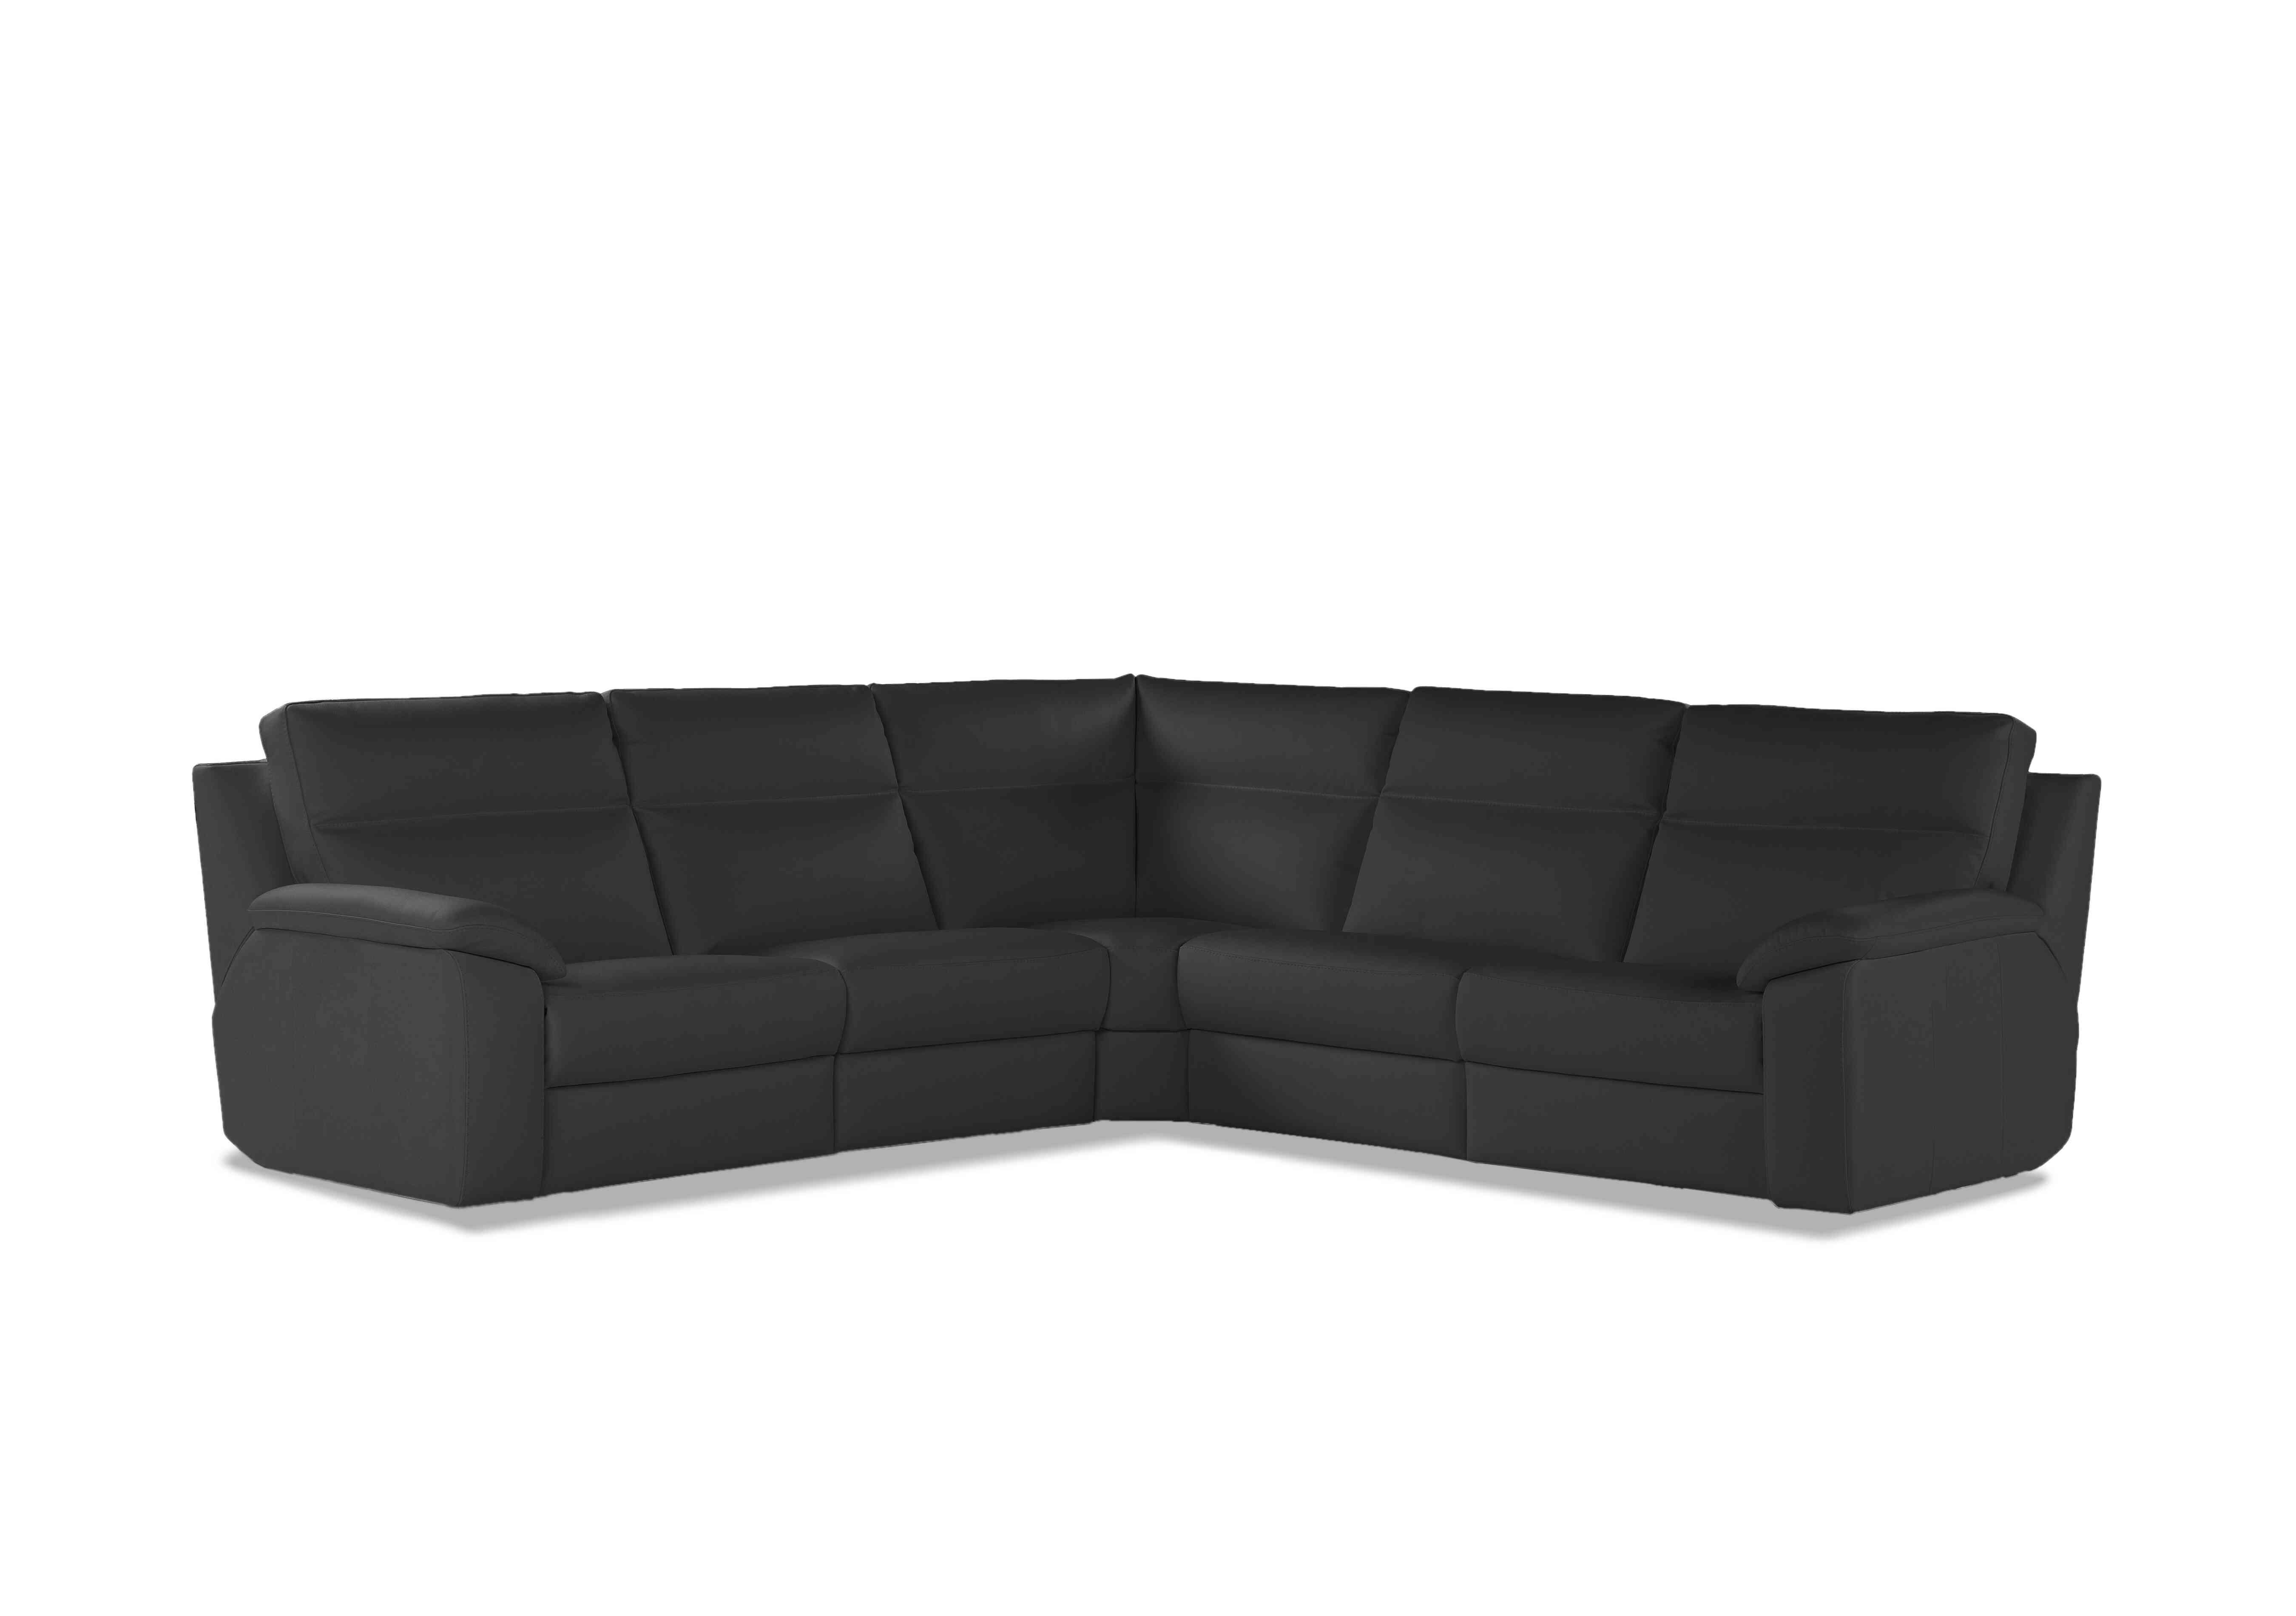 Pepino Large Leather Corner Sofa in 327 Torello Grigio Scuro on Furniture Village